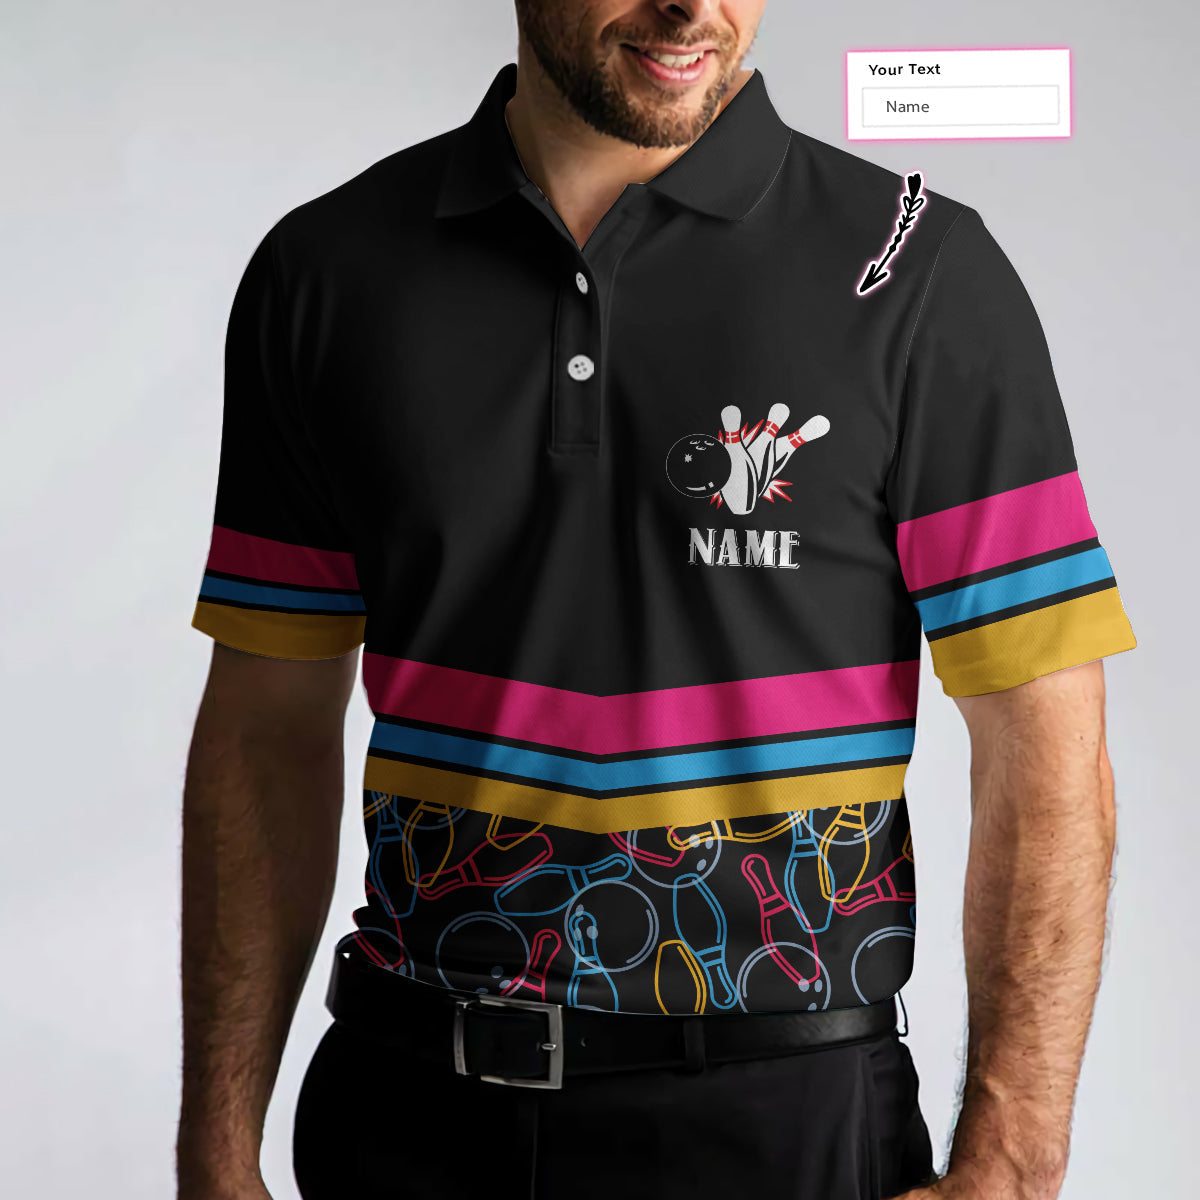 Personalized Bowling Team Custom Polo Shirt/ Customized Bowling Shirt For Bowlers/ Colorful Bowling Shirt Coolspod